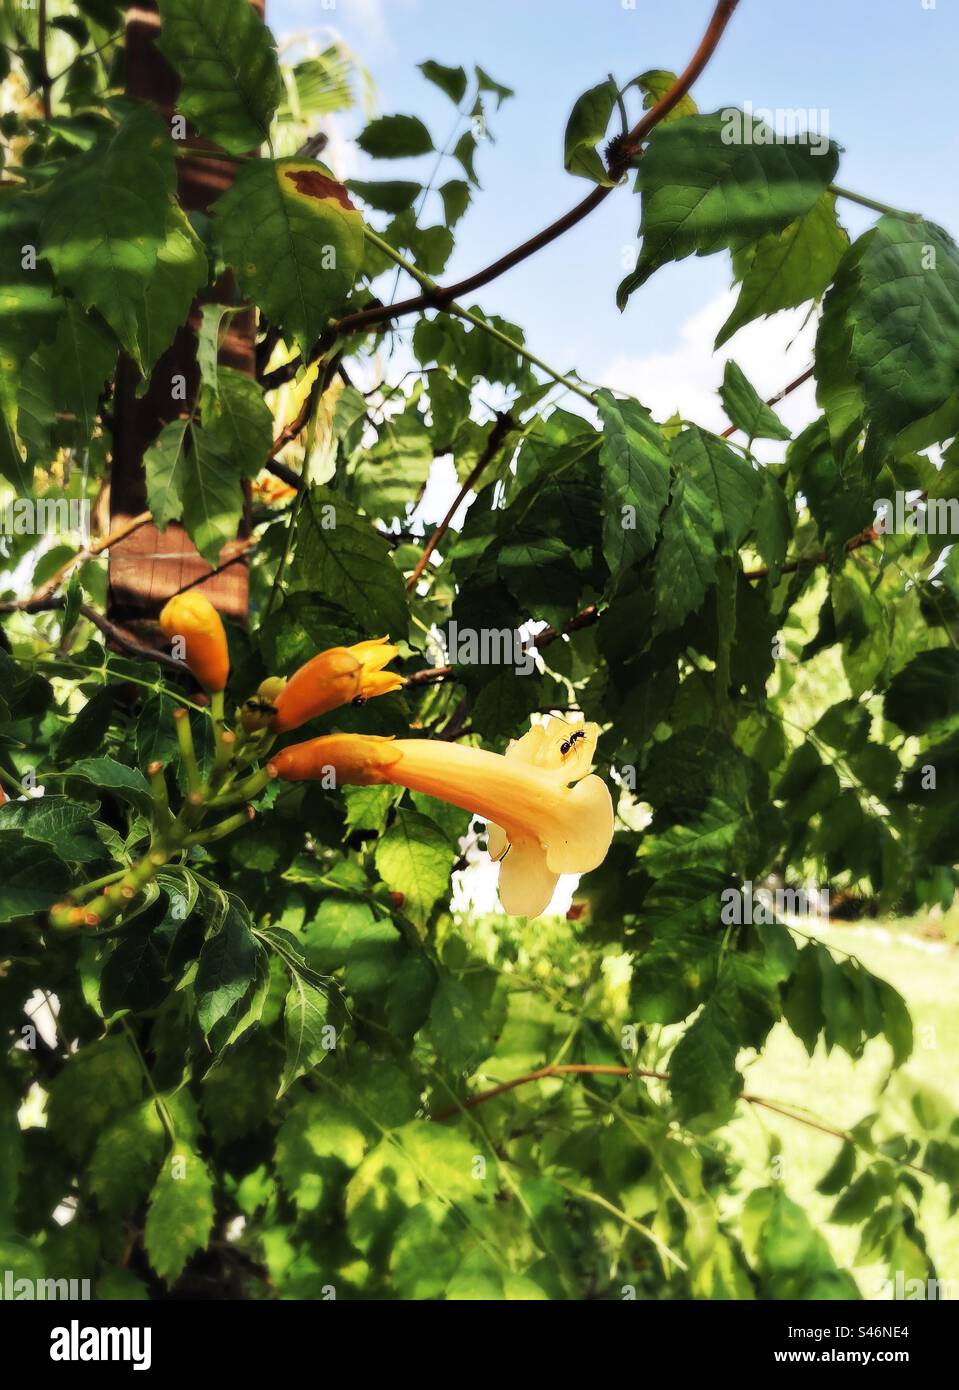 Trumpet Vine in flower in a garden in summer, Spain Stock Photo